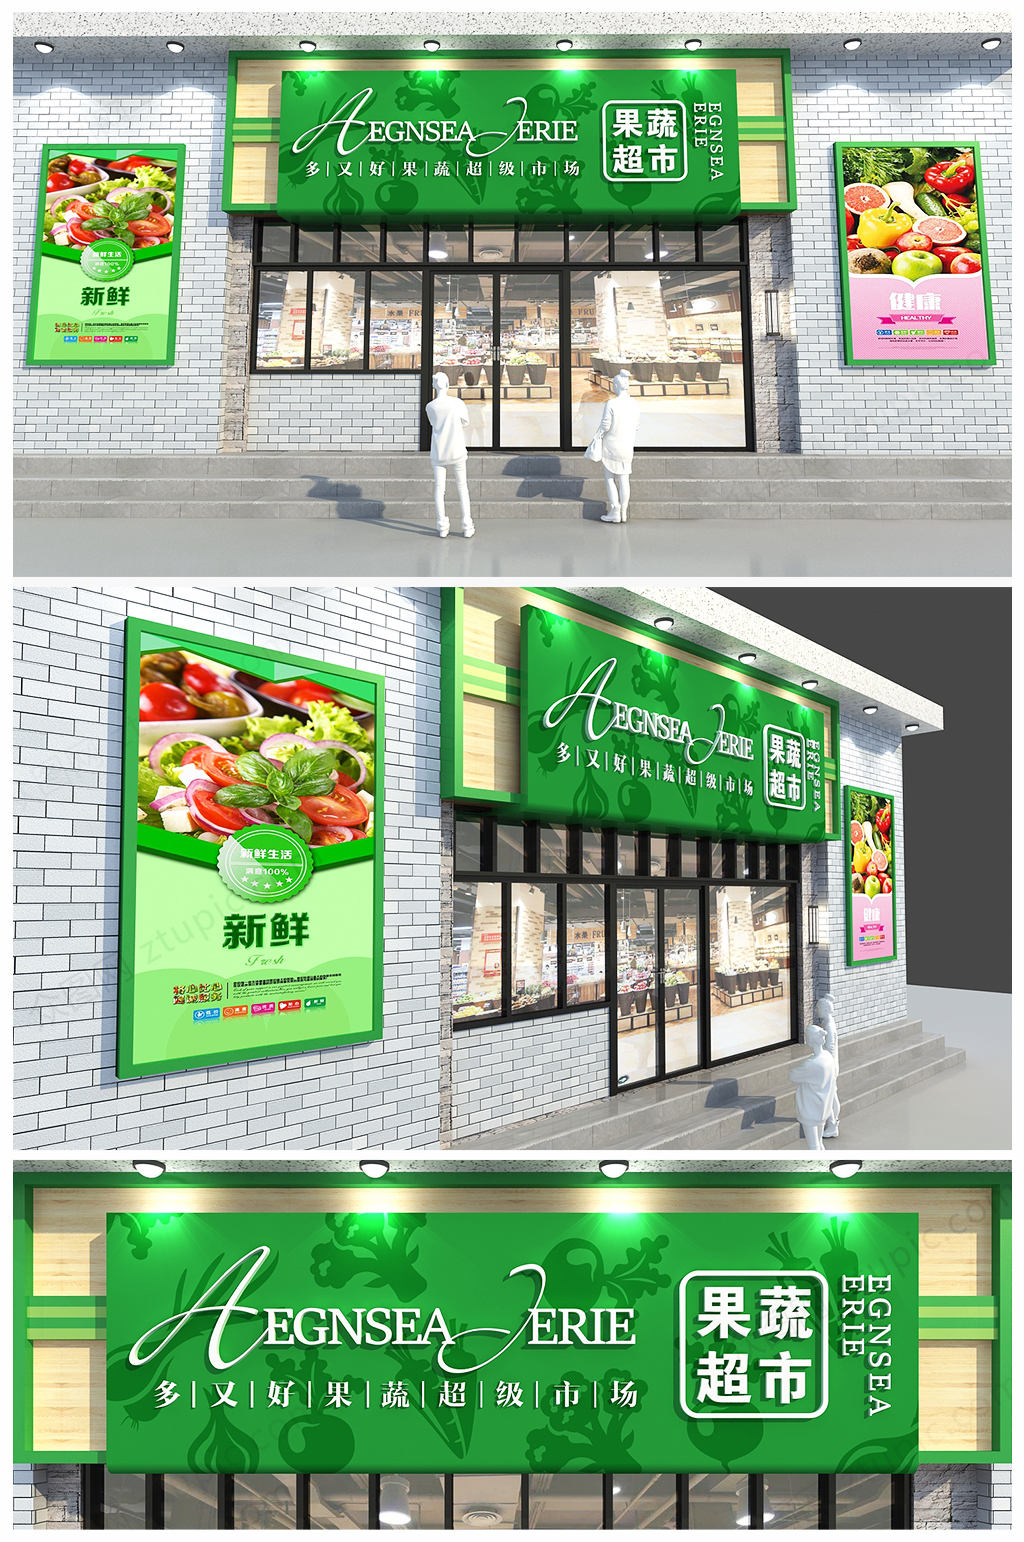 绿色原生态概念水果店蔬果超市门头招牌设计效果图 招牌